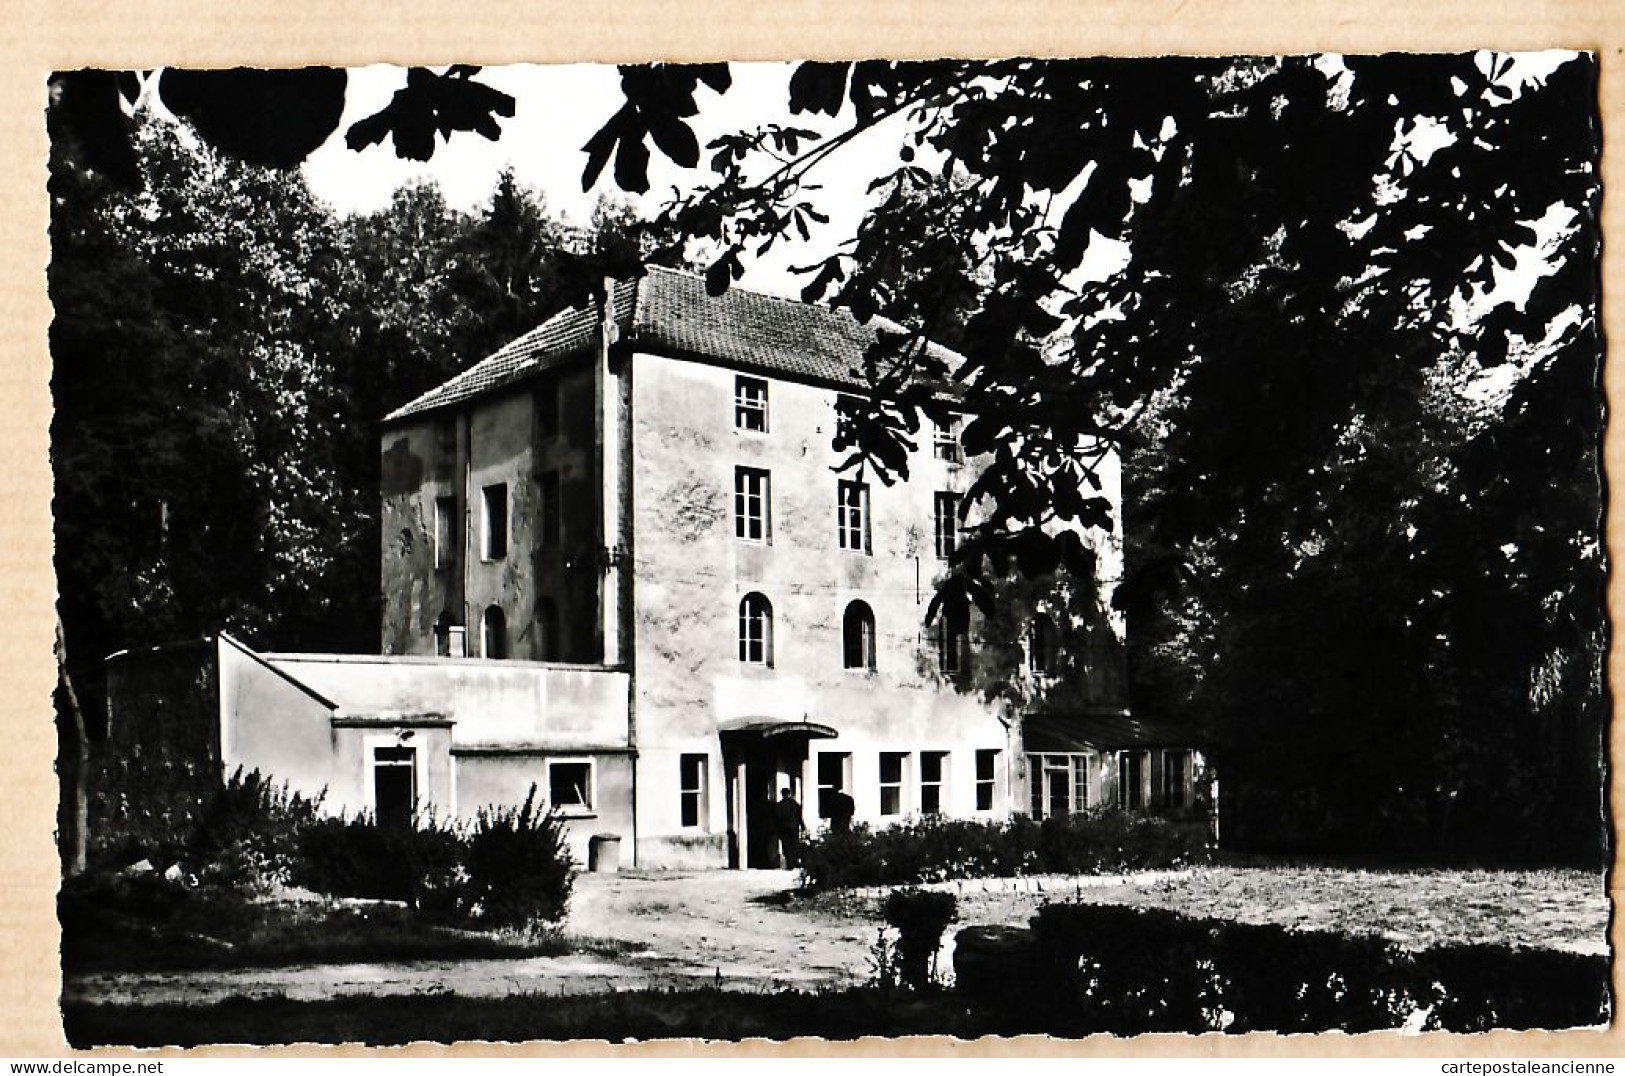 35421 / BOISSY-LA-RIVIERE 91-Essonne Domaine BIERVILLE Hotellerie Centre Education Ouvriere Sociale C.F.D.T 1950 RAMEAU  - Boissy-la-Rivière